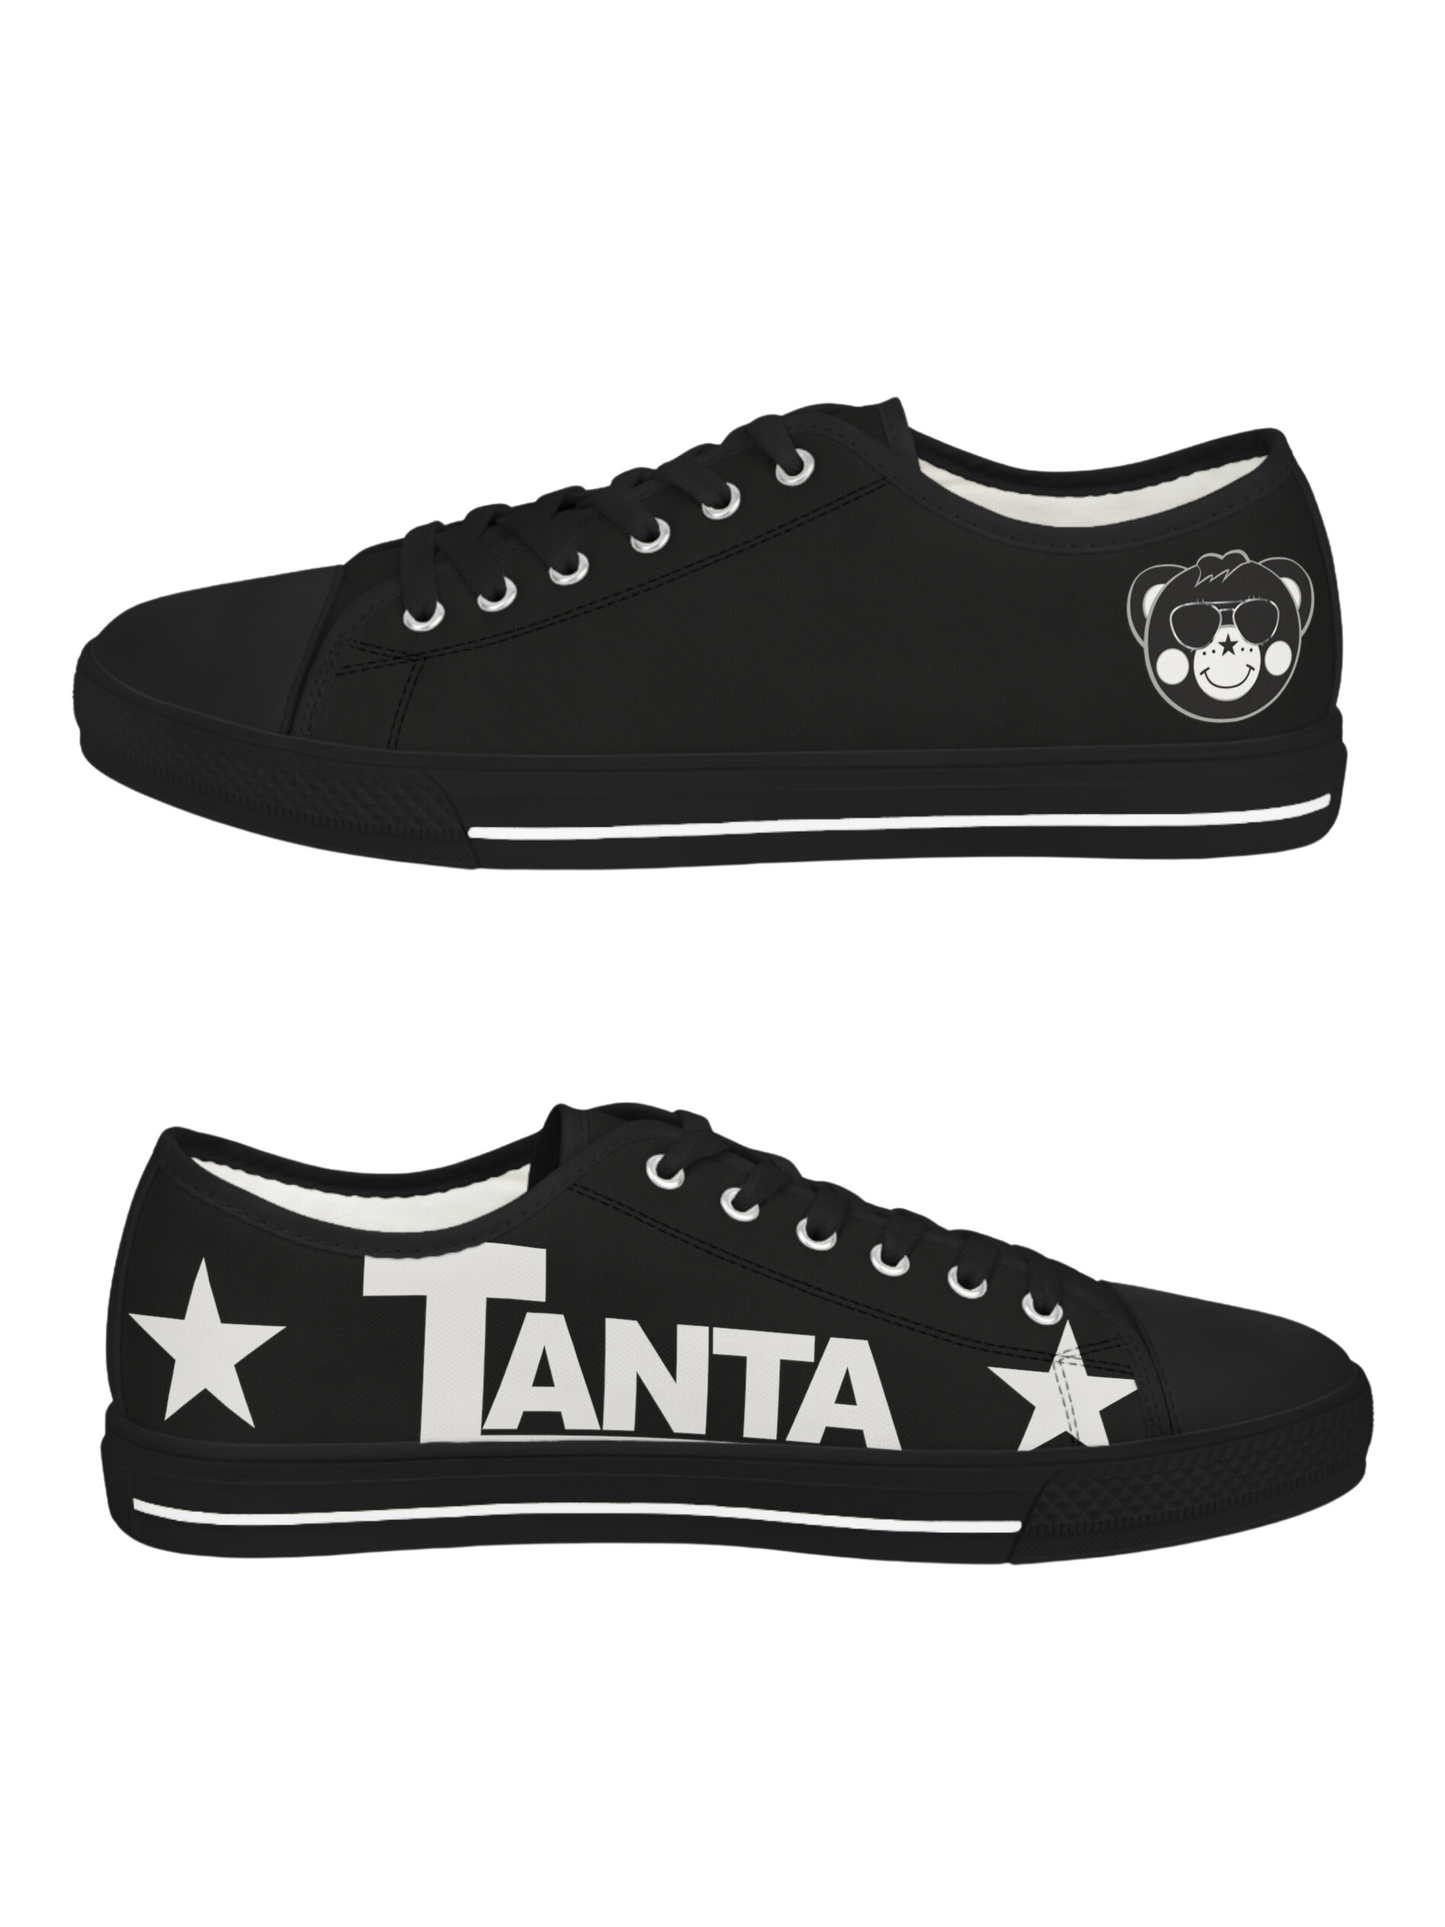 TANTA Low Top Sneakers